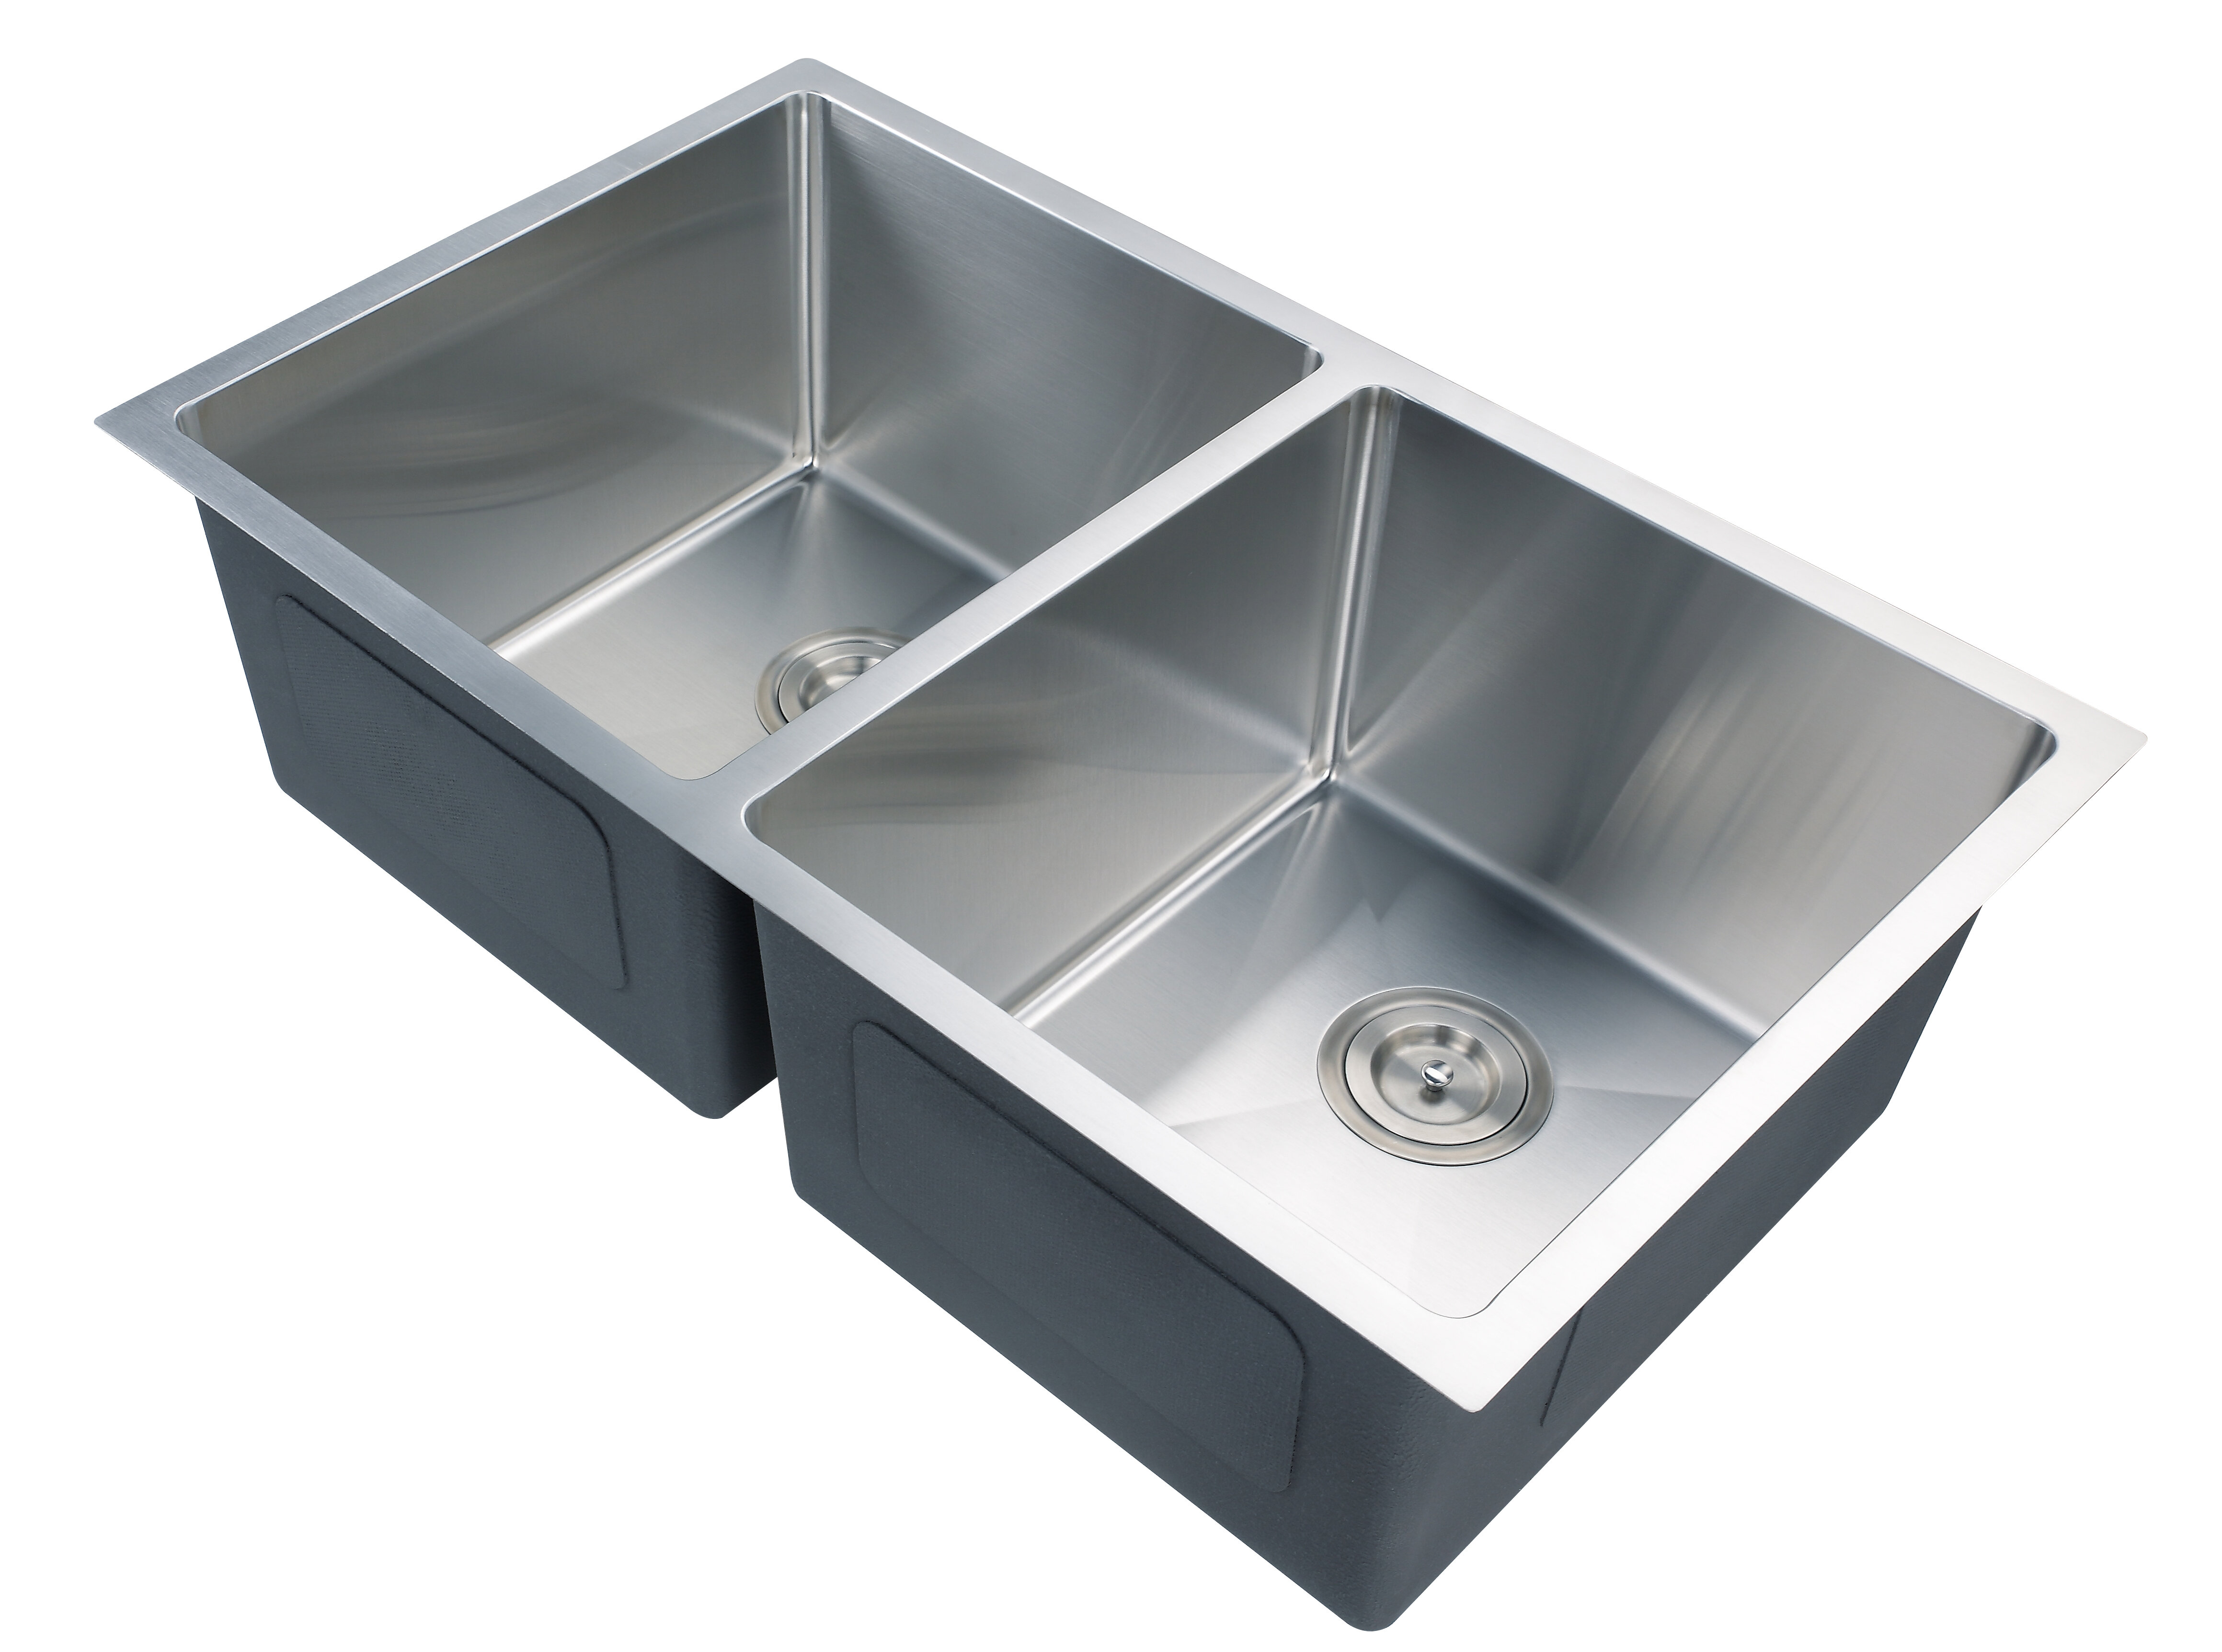 https://assets.wfcdn.com/im/69689100/compr-r85/1052/105229395/32-l-undermount-double-bowl-stainless-steel-kitchen-sink.jpg